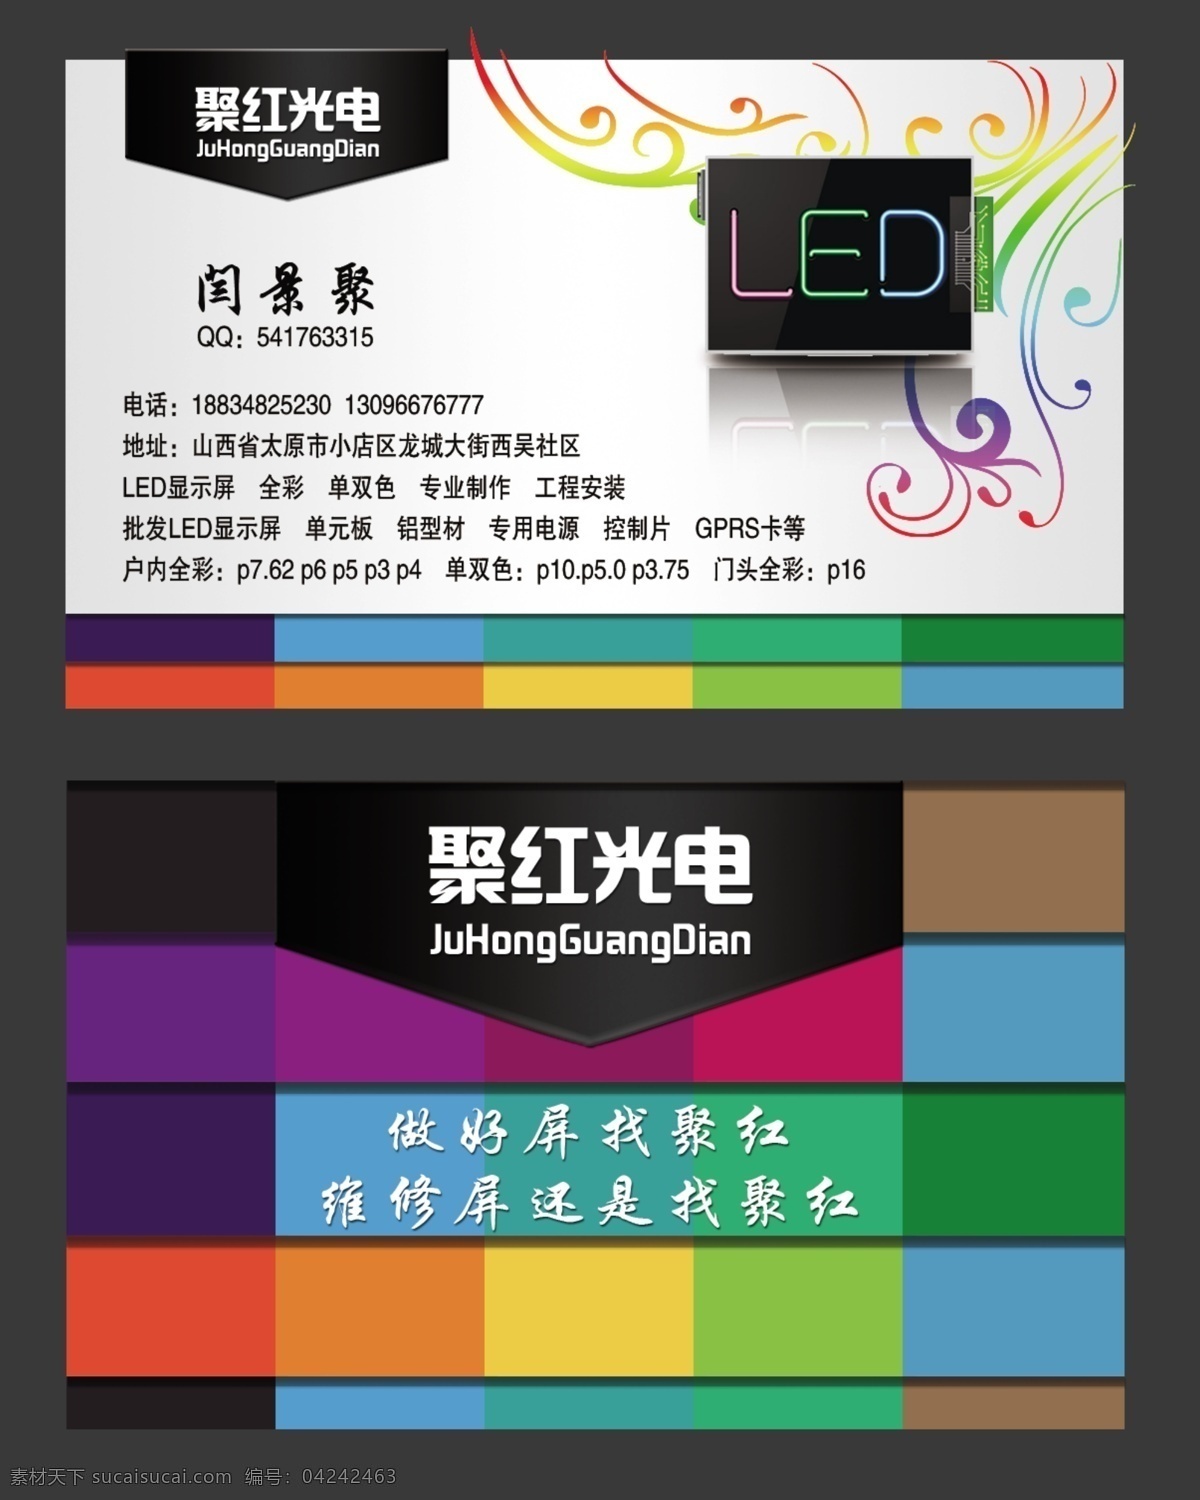 名片 电子屏 光电 led 显示屏 全彩 名片卡片 广告设计模板 源文件